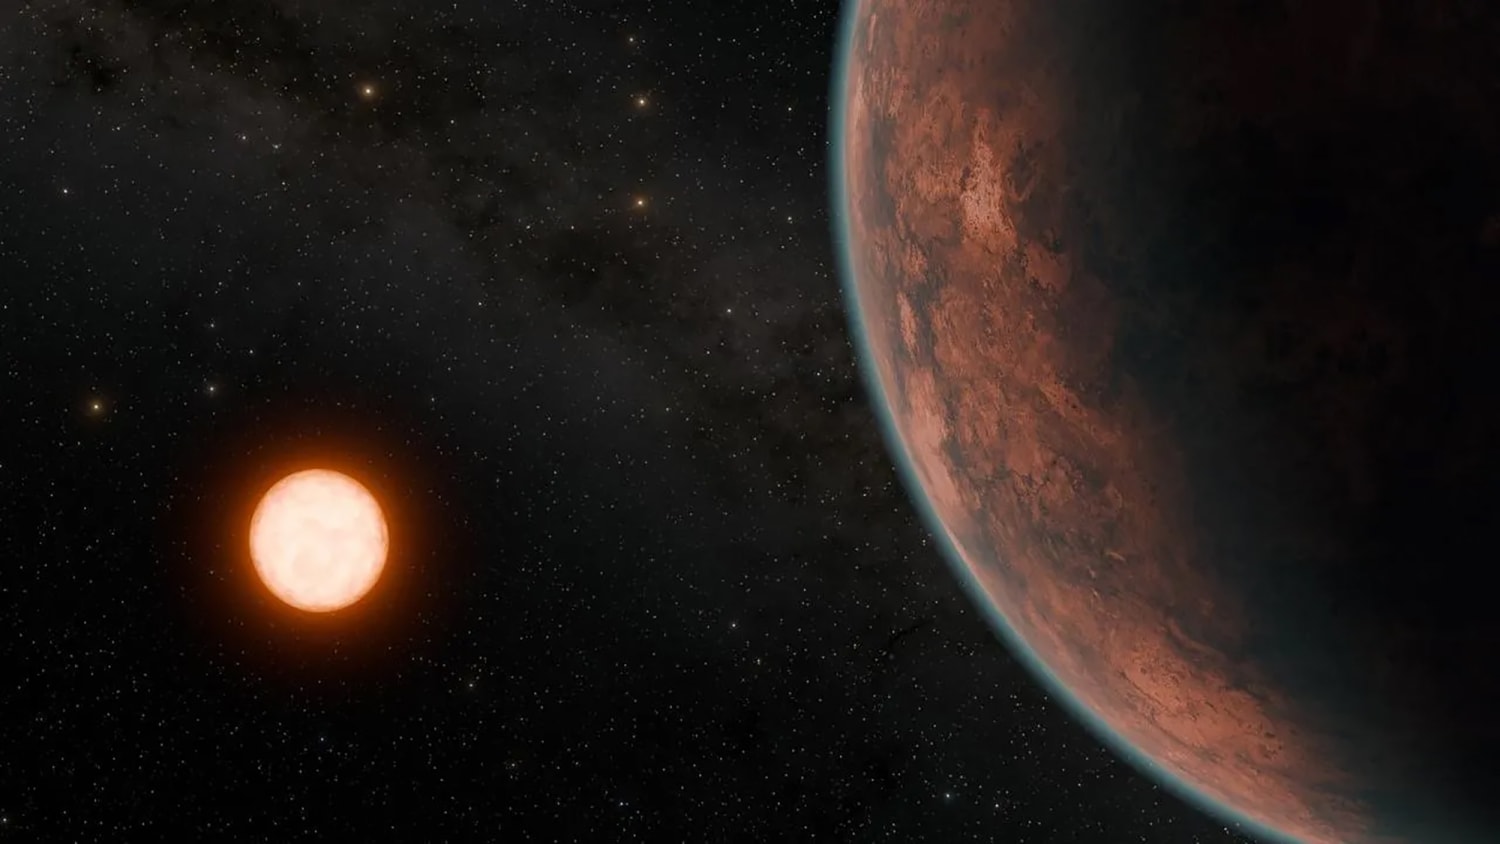 اكتشاف كوكب بحجم الأرض يحتمل أن يكون صالحًا للسكن على بعد 40 سنة ضوئية